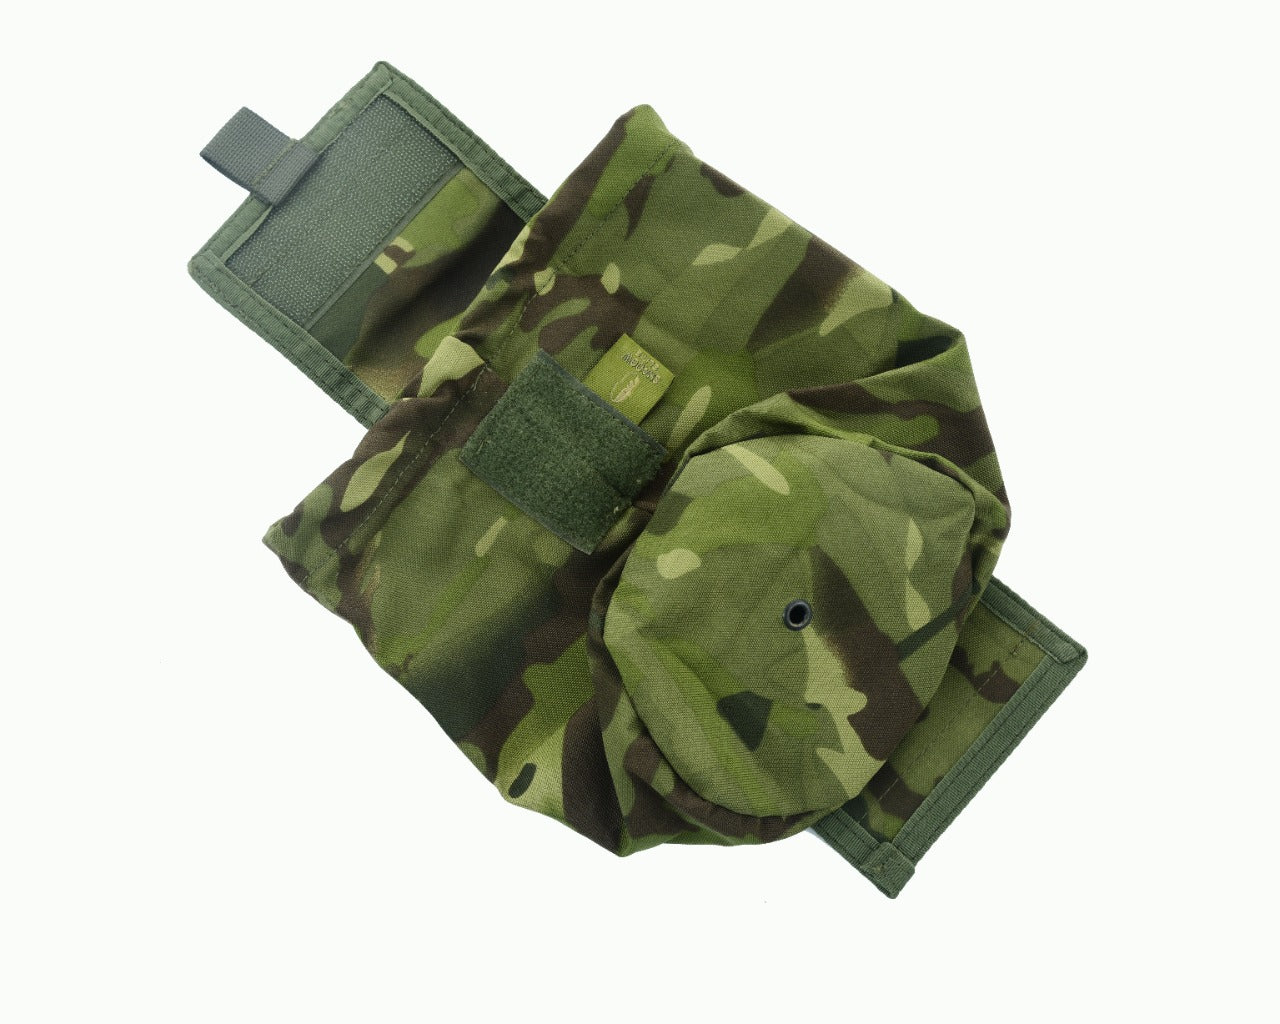 SHE-806 Molle Folding Dump pouch Color Multicam Green